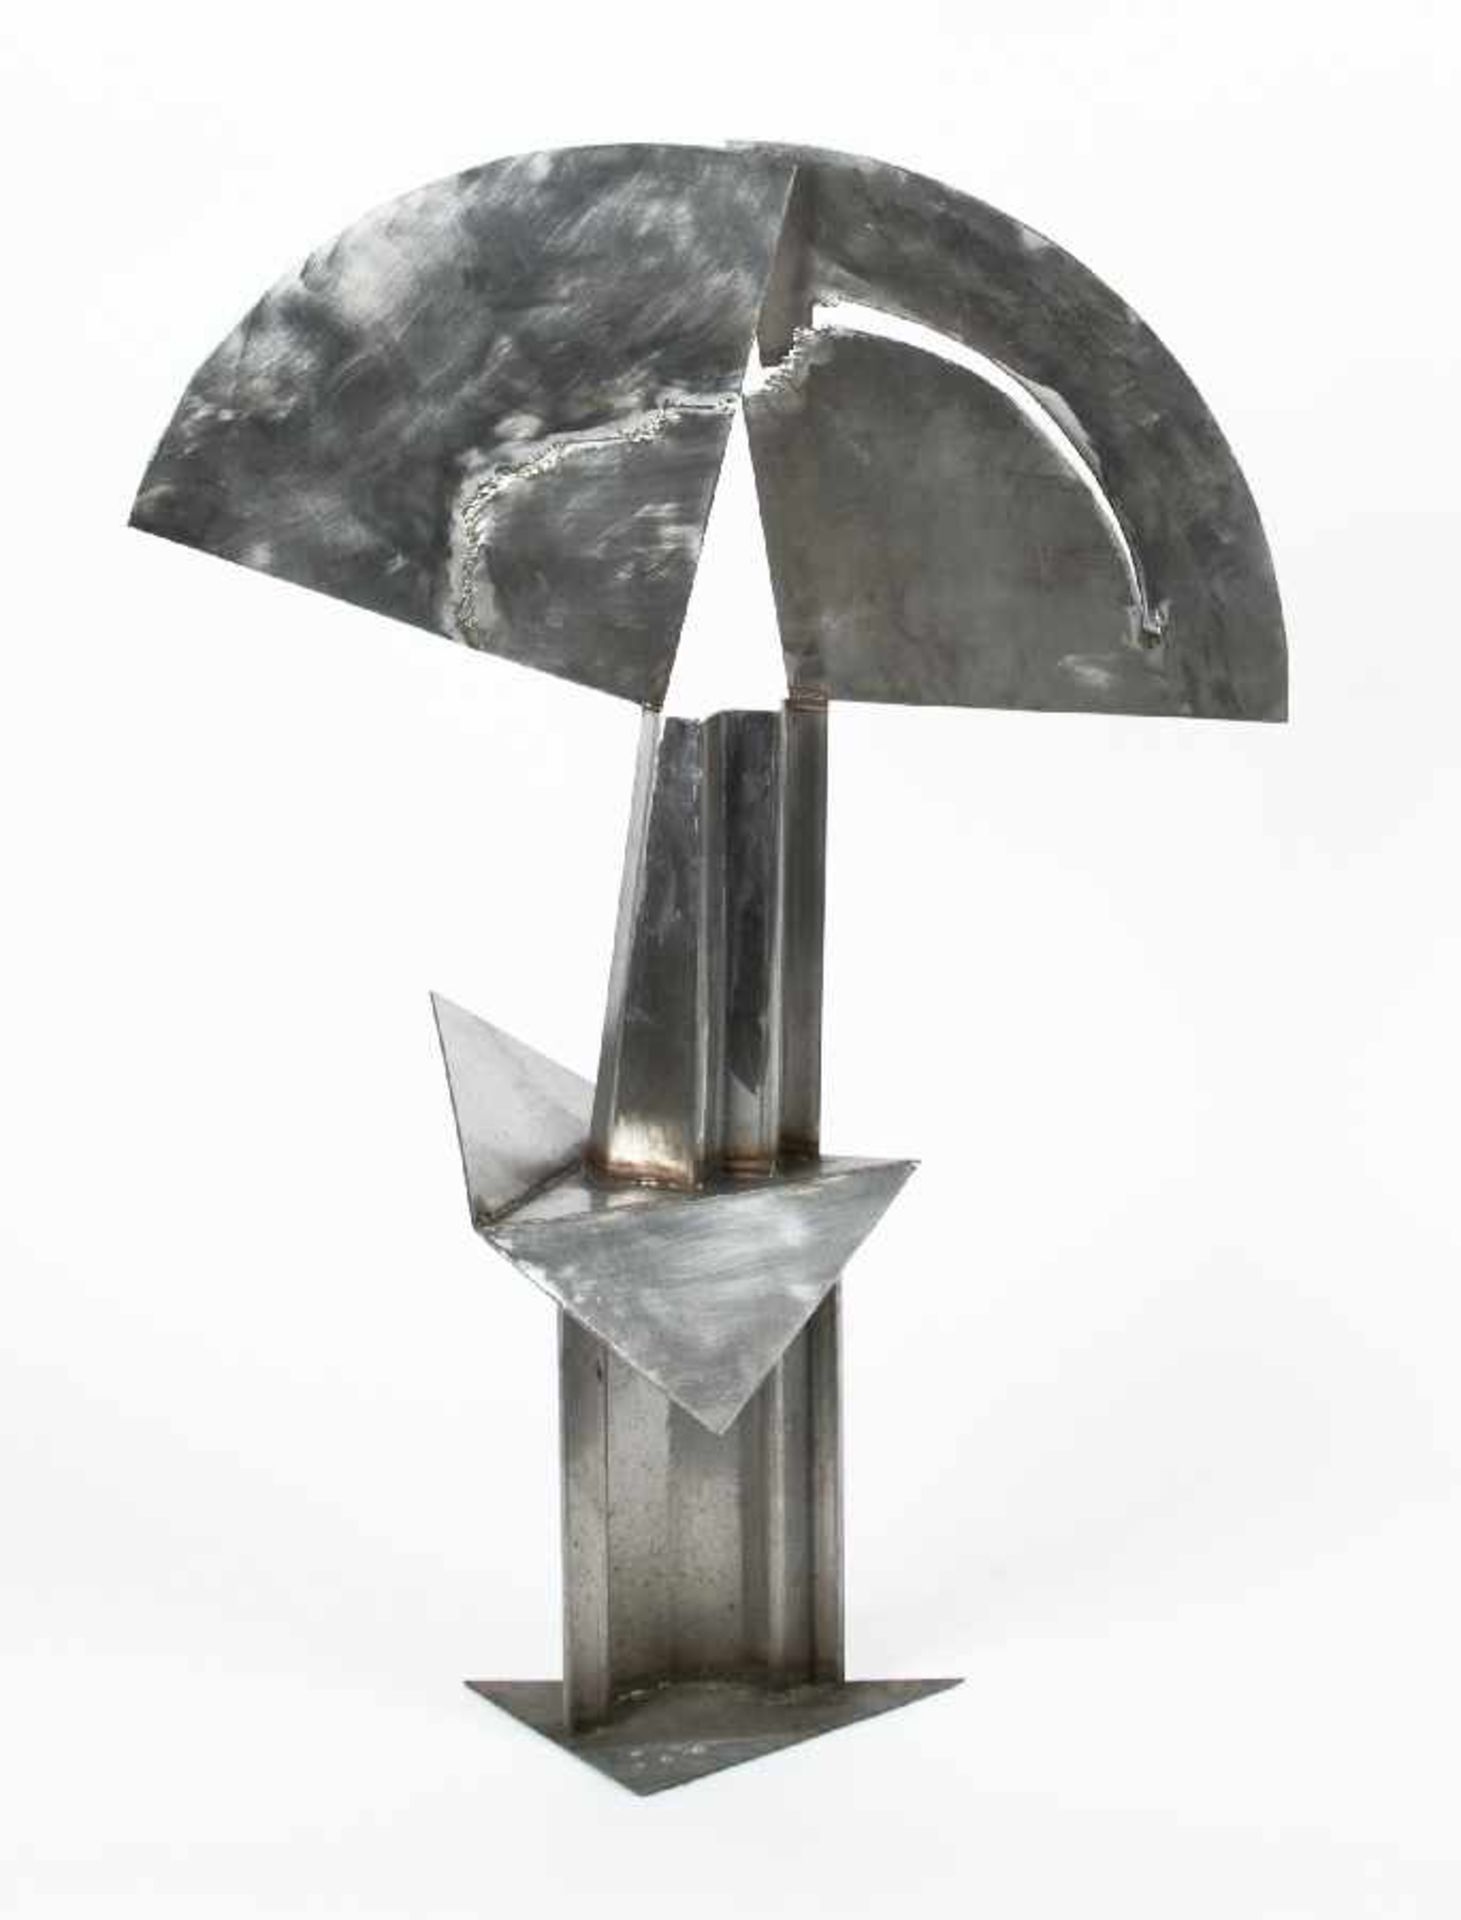 Bildhauer der 80er Jahre Stele Edelstahl, geschweißt und beschliffen; H 102 cm Sculptor of the 80s